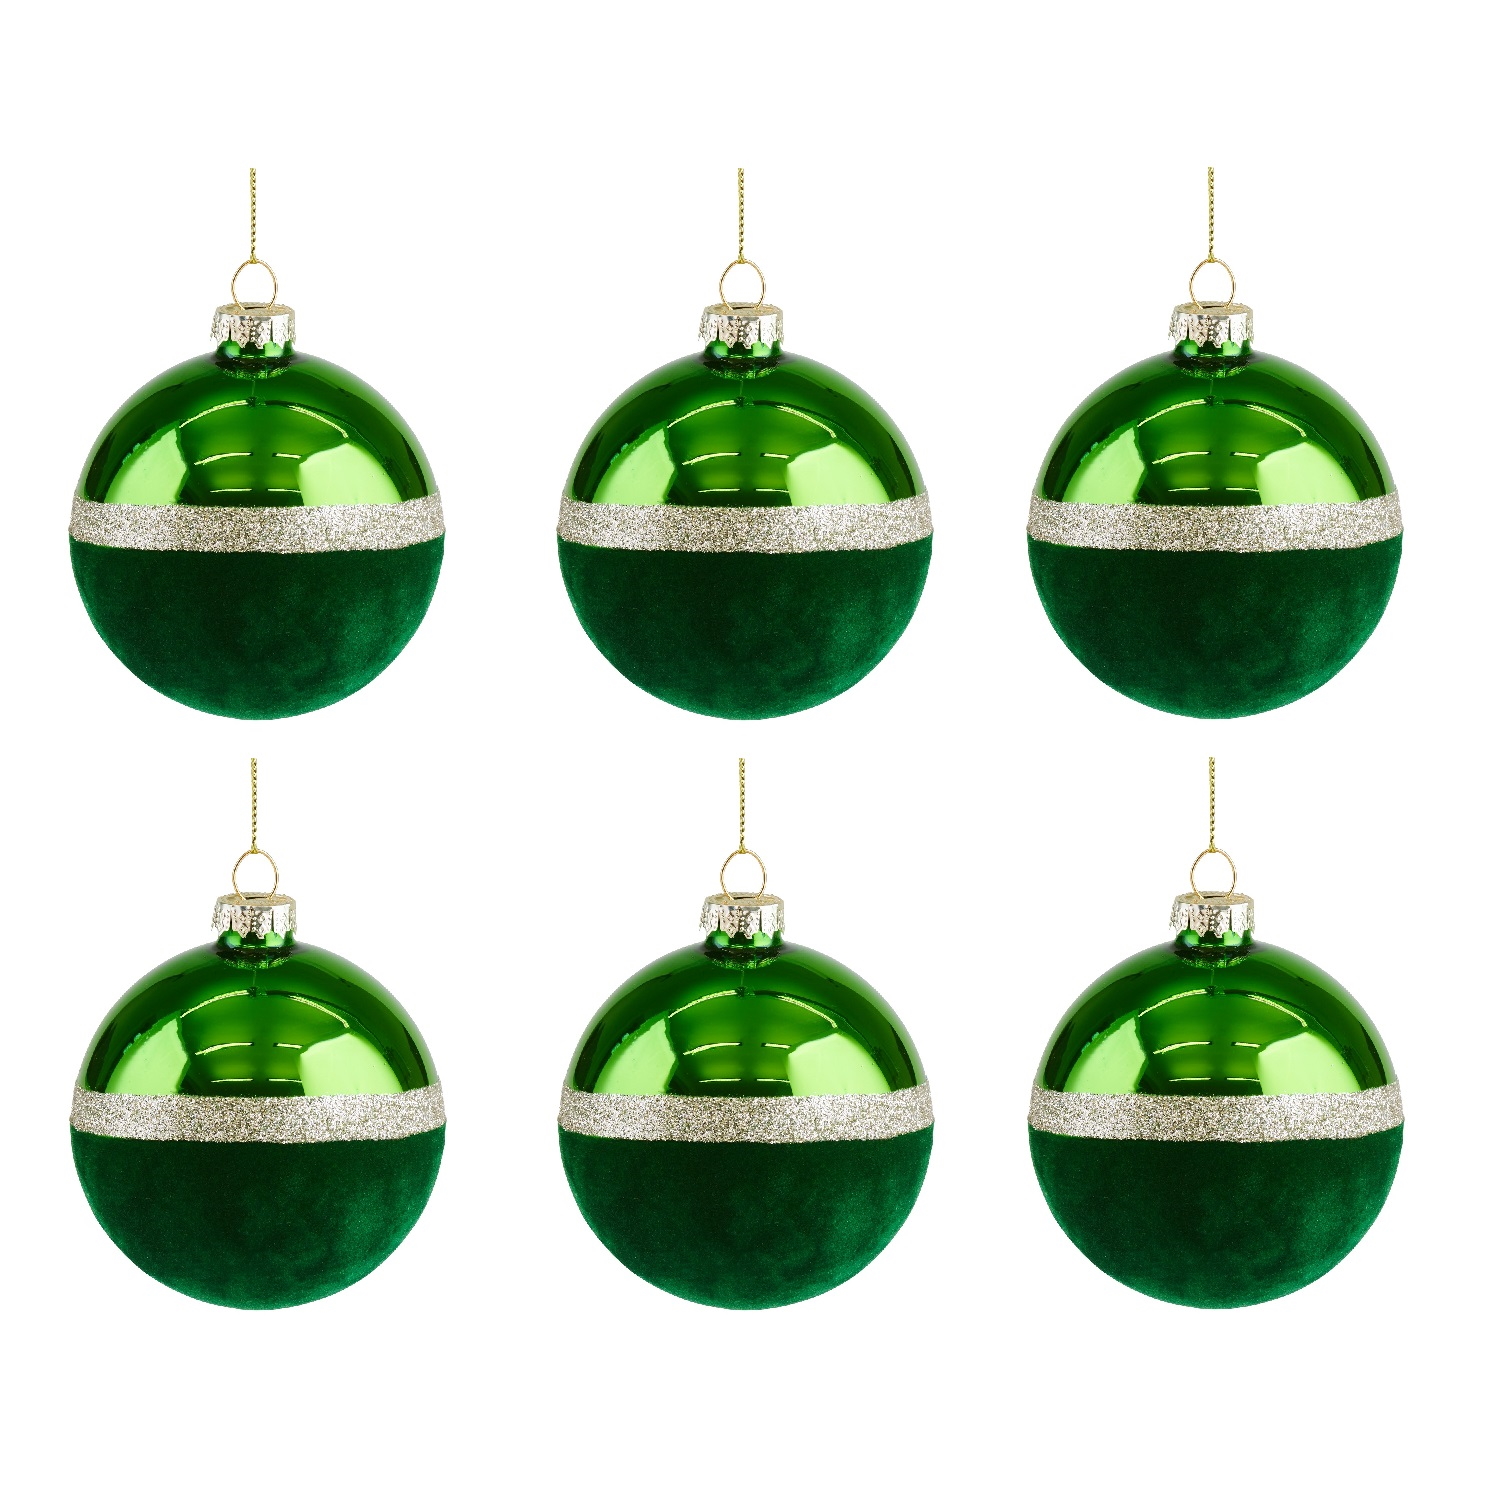 Weihnachtskugel Seoul Samt Set 8cm grün 6 Stück im Set Christbaumkugel mit Glitzerstreifen